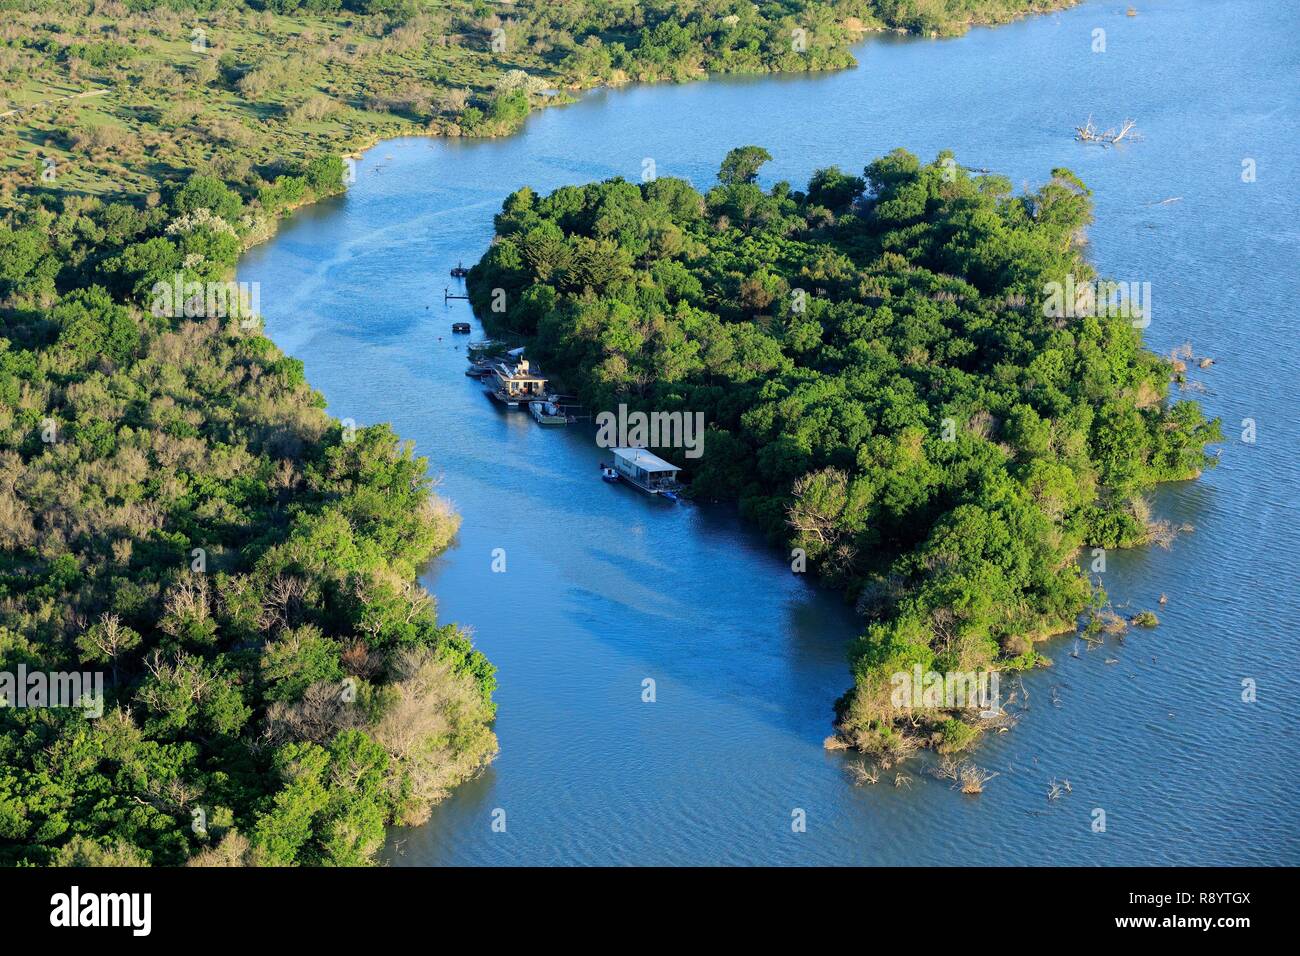 France, Bouches du Rhône, Parc Naturel Régional de Camargue, Arles, Salin de Giraud, îlot dans le Rhône, près de la digue de la palissade (vue aérienne) Banque D'Images